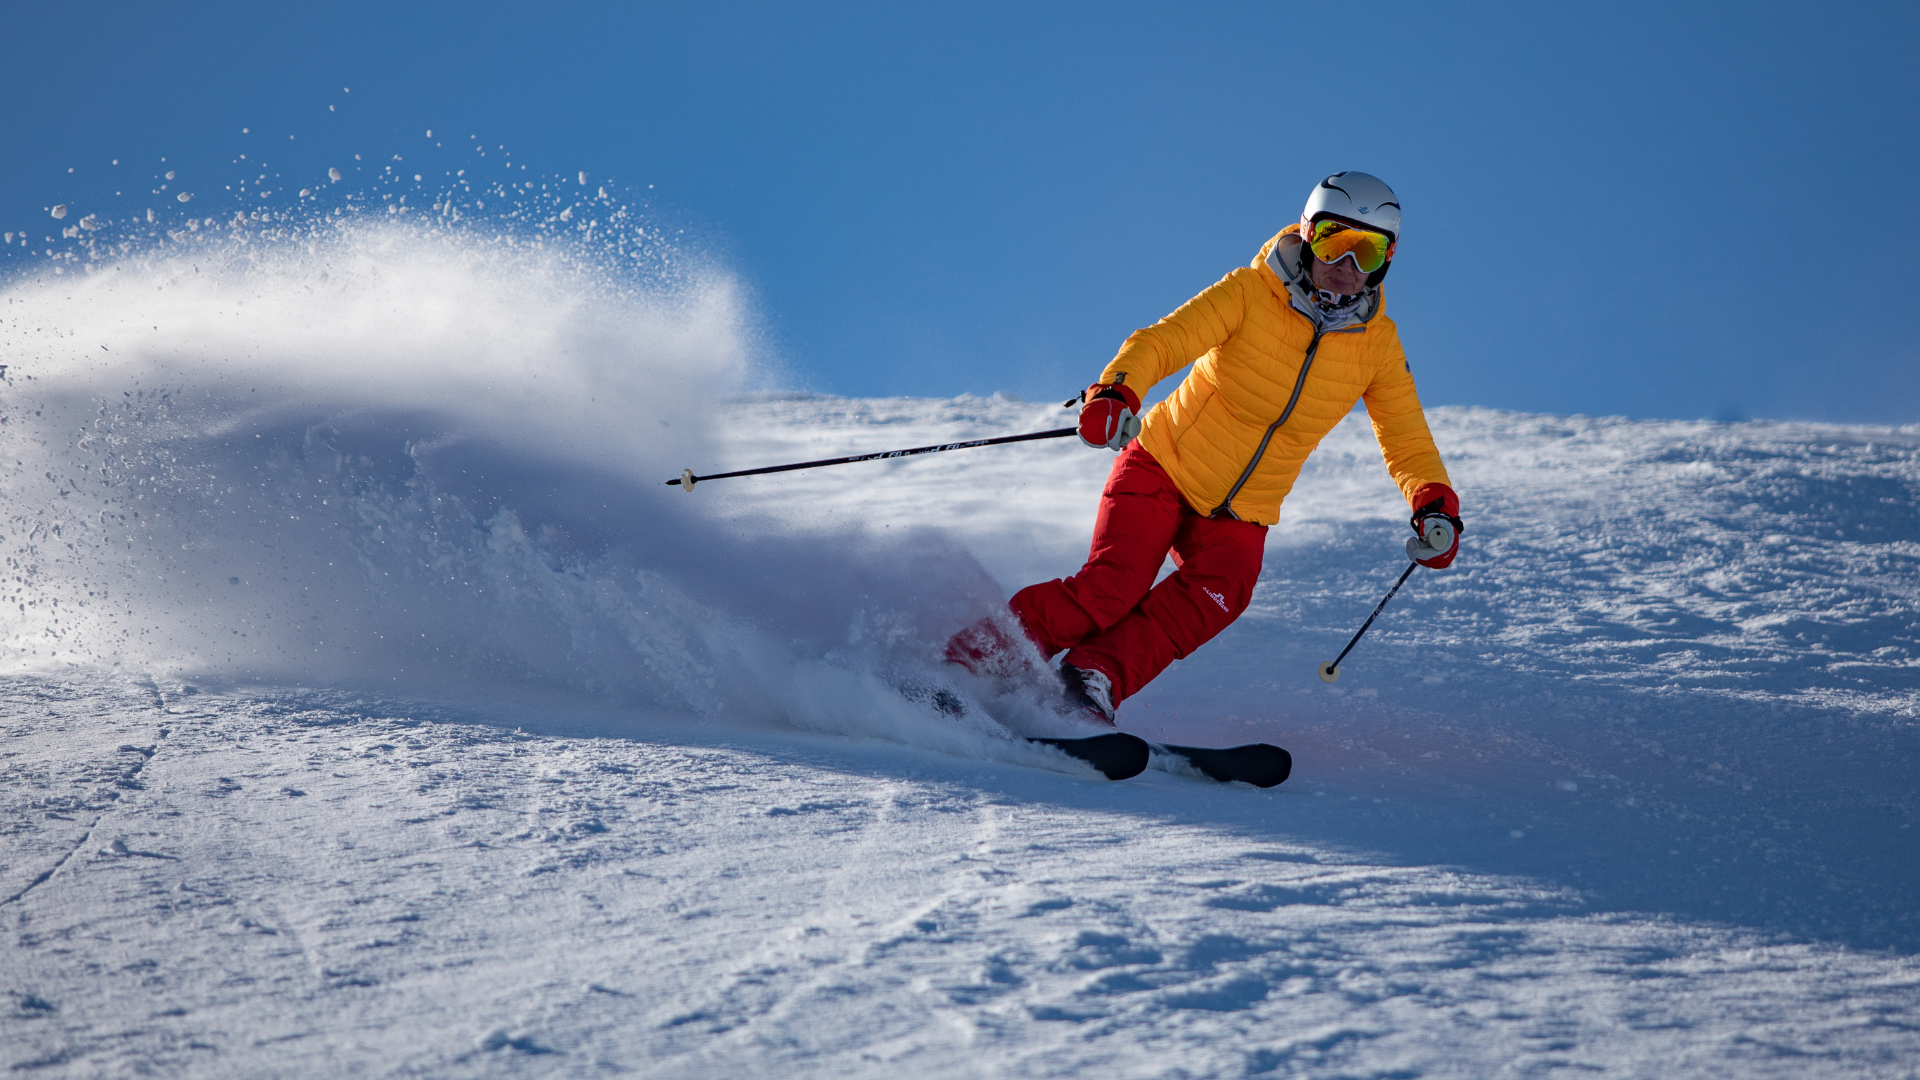 Quali sono gli infortuni più comuni sulle piste da sci